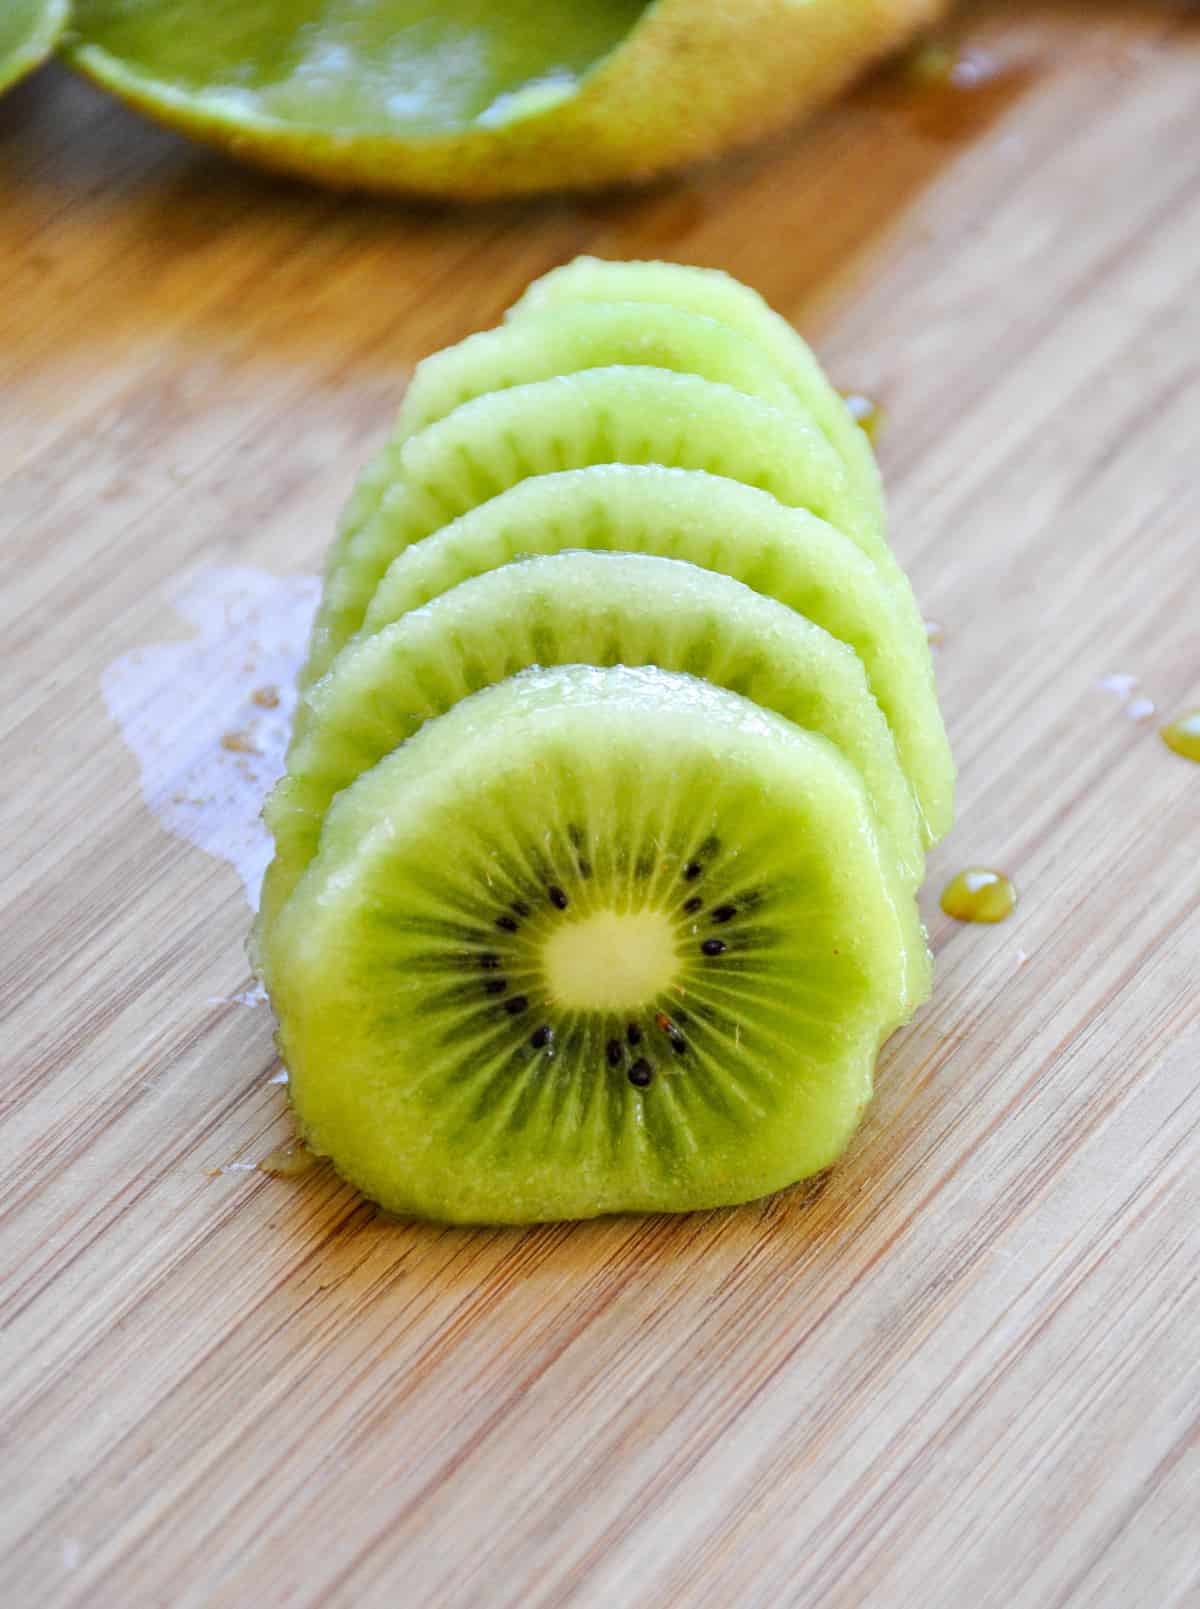 Sliced kiwi